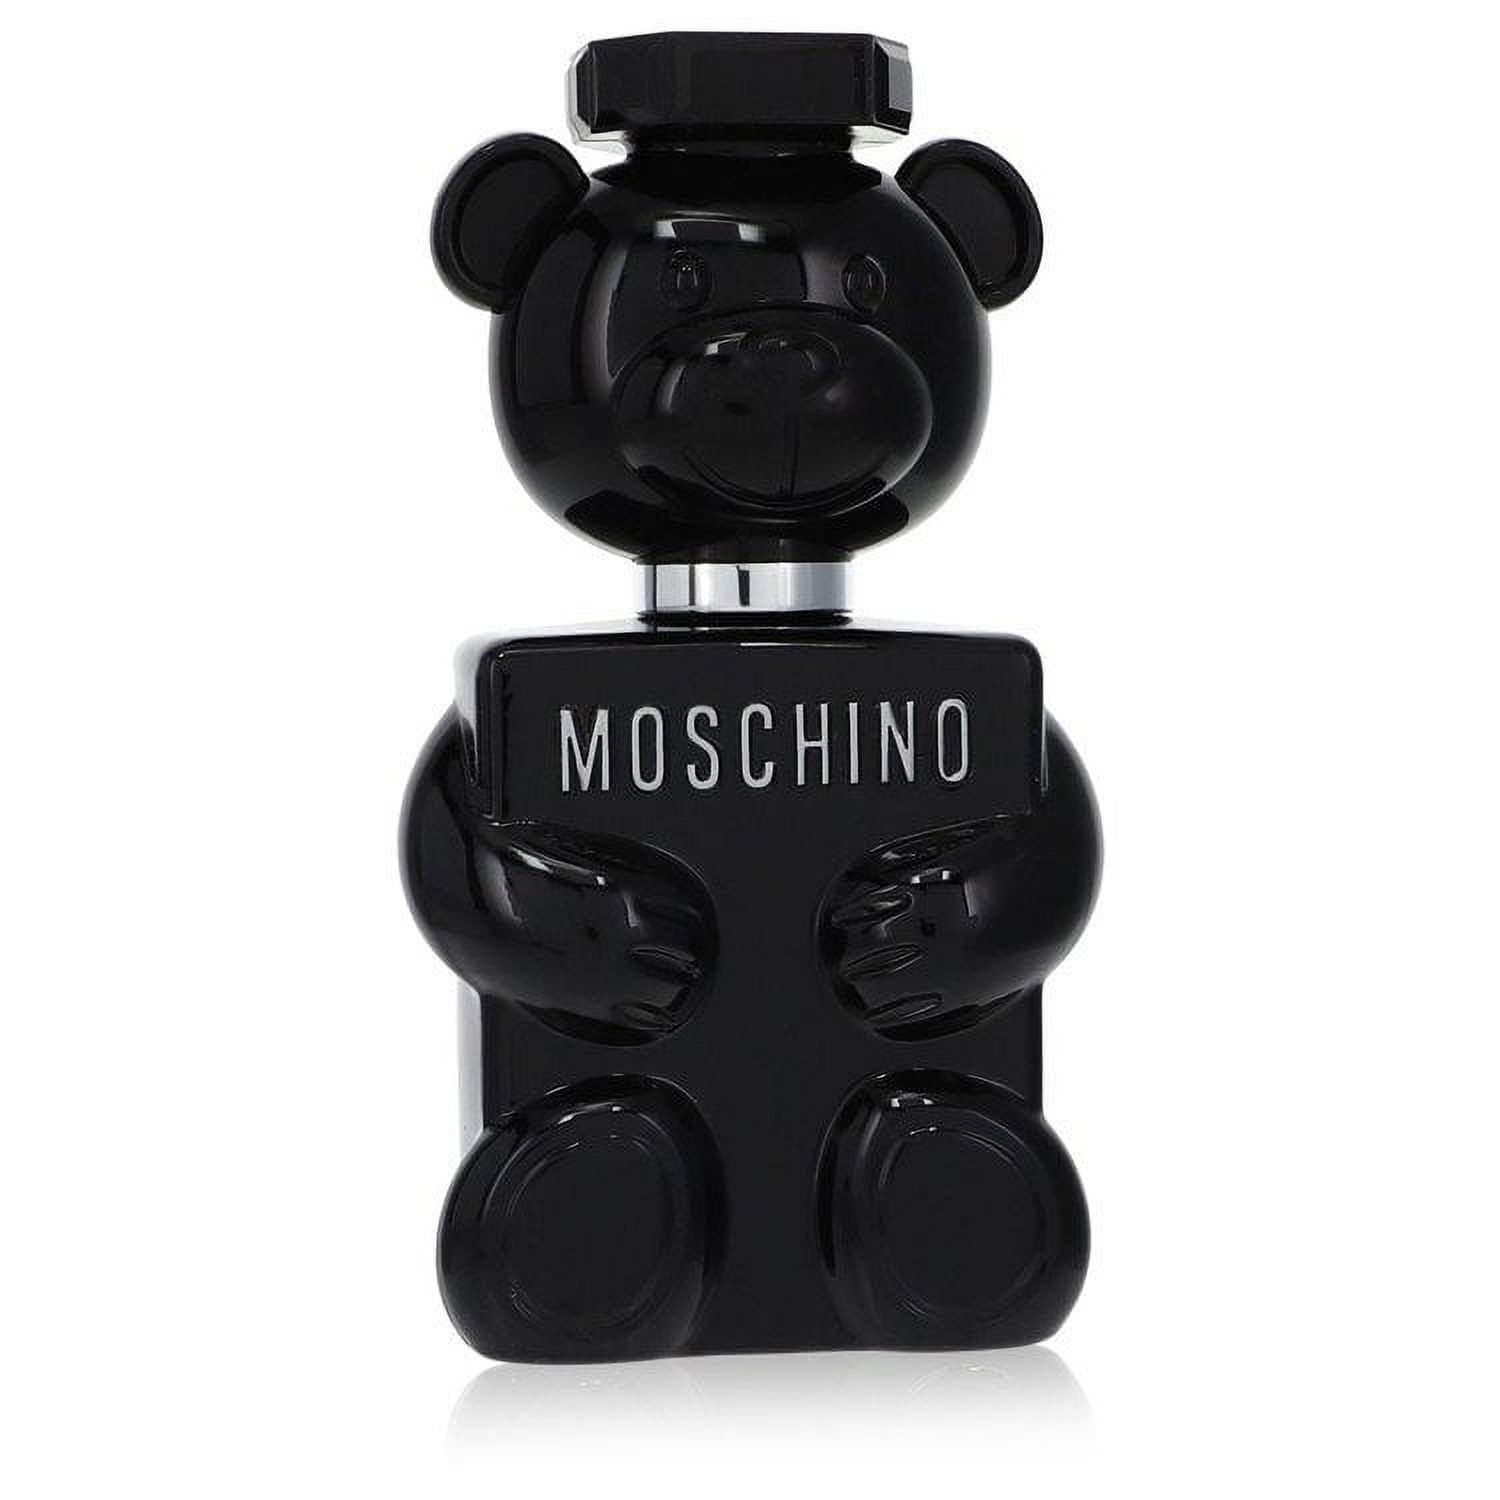 Moschino Toy Boy by Moschino Eau De Parfum Spray 3.4 oz for Men - Brand ...